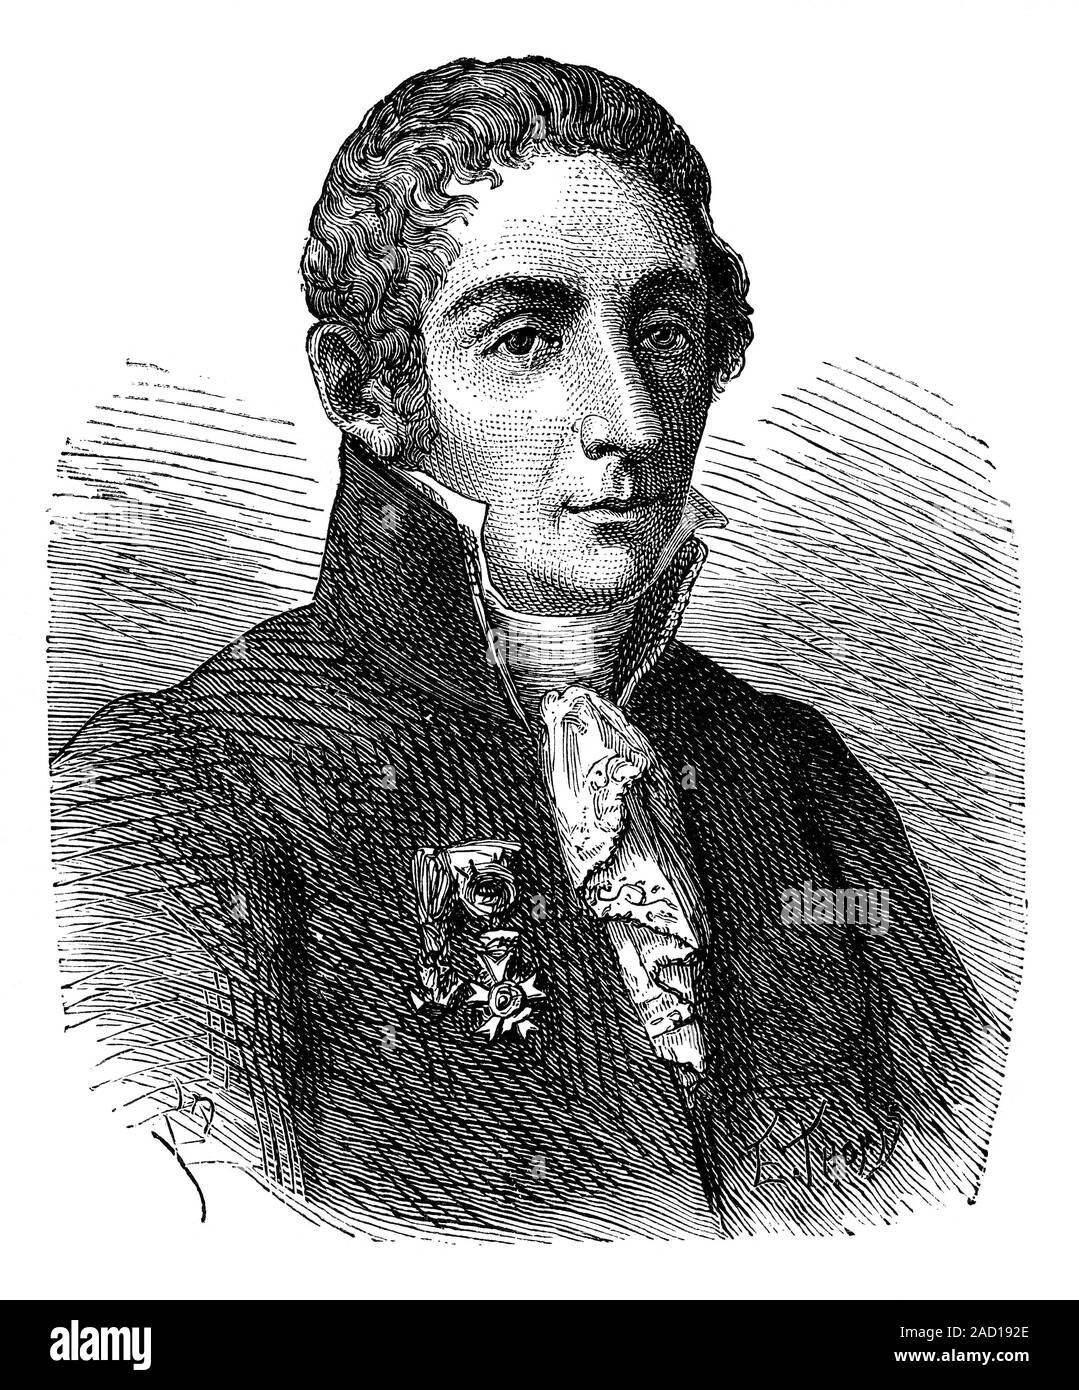 Alessandro Volta (1745-1827), físico italiano. Volta inventó la pila eléctrica, anunciando su descubrimiento 1800. batería constaba de alter Fotografía de stock - Alamy